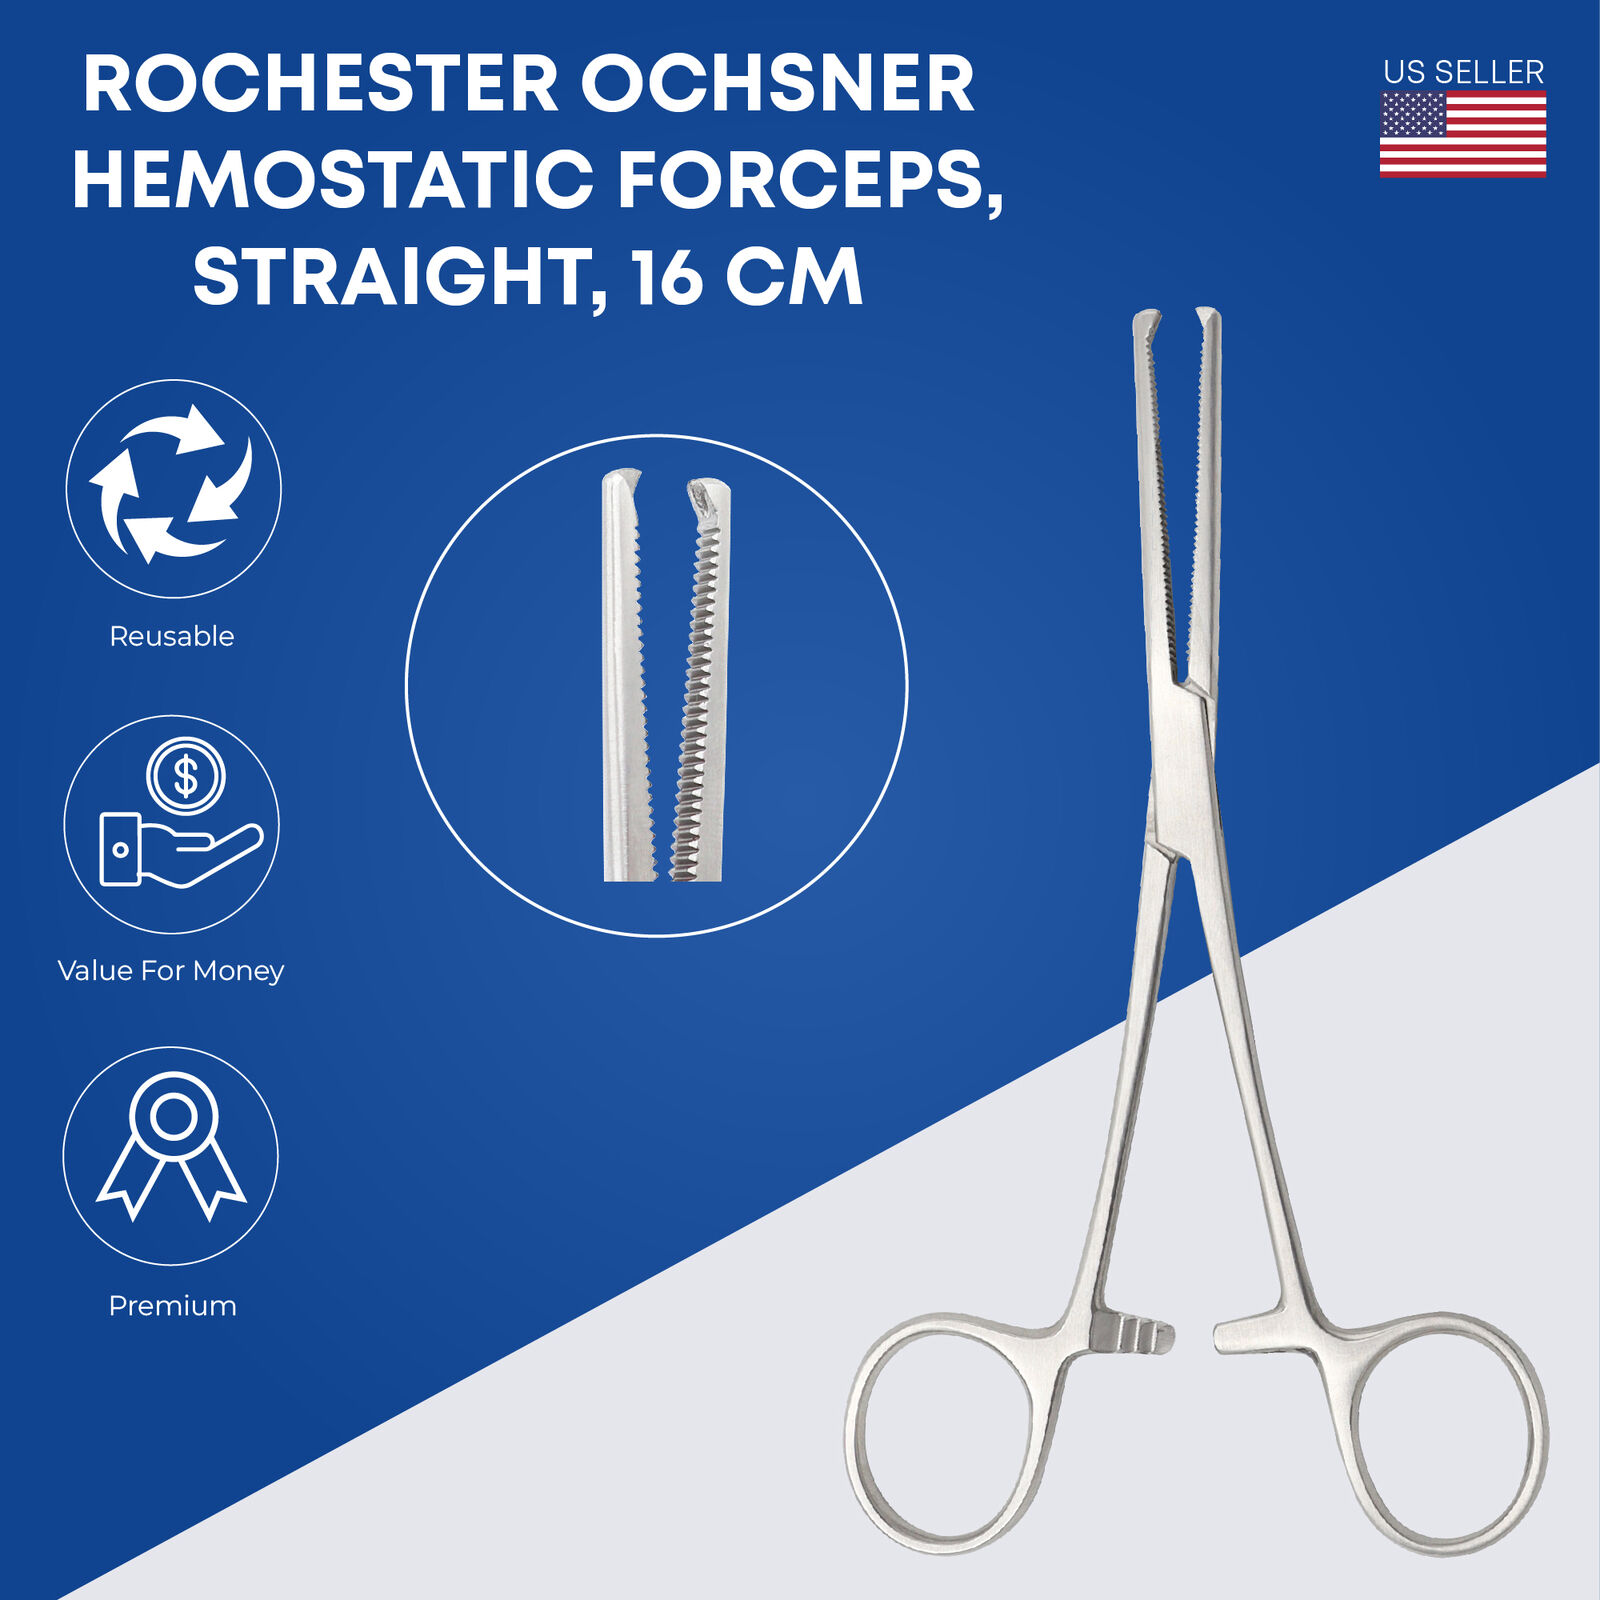 Rochester Ochsner Hemostatic Forceps 16Cm Straight - Stainless Steel